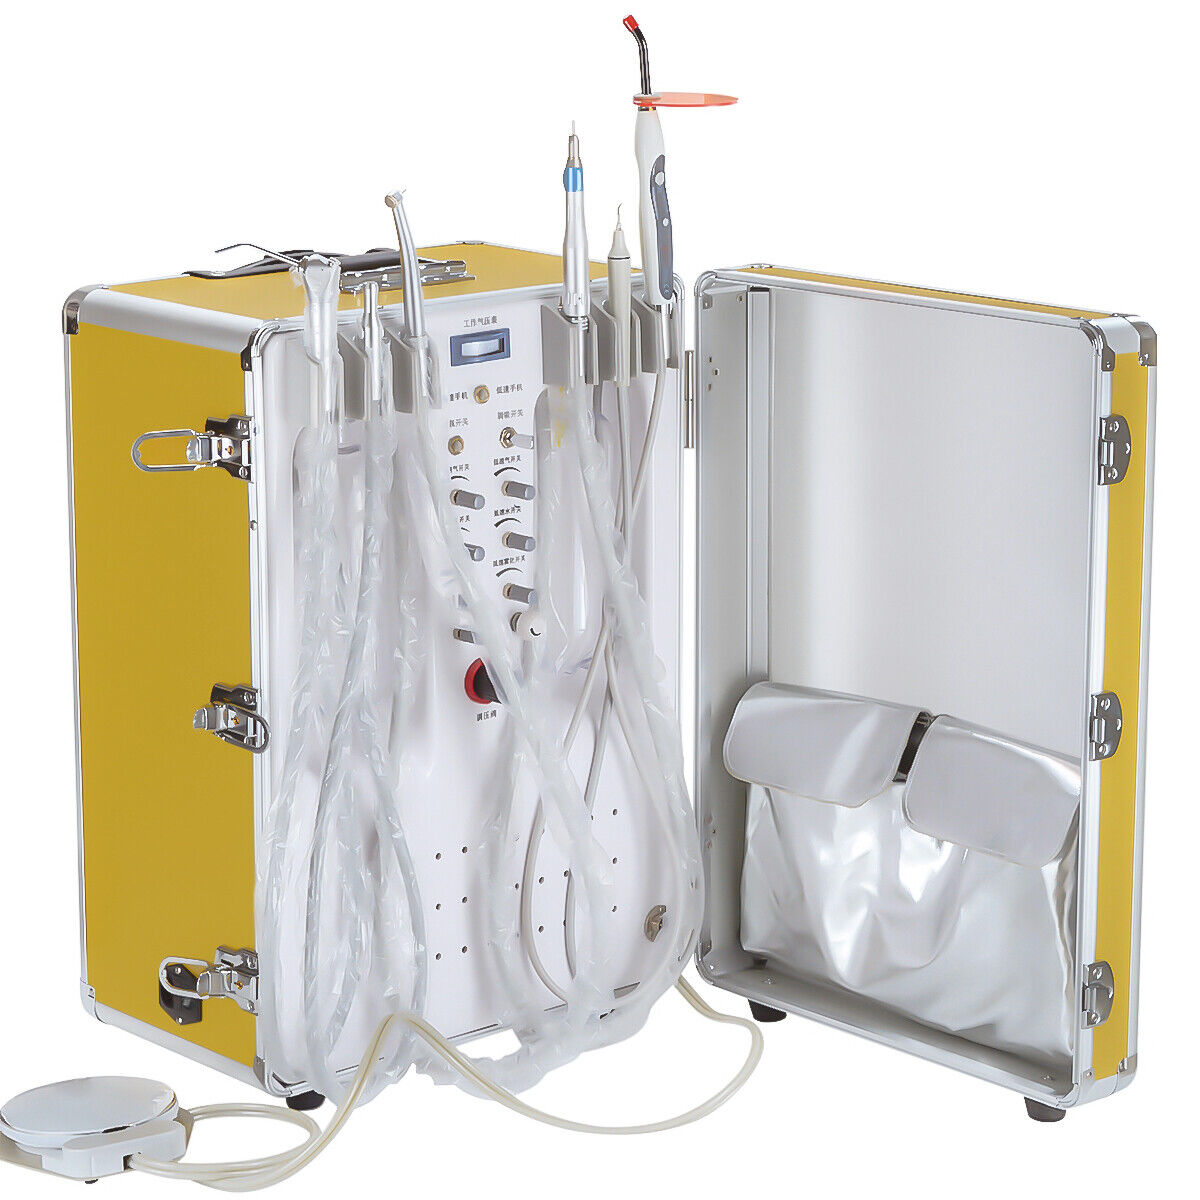 Riunito odontoiatrico portatile XS-341 con compressore olio + lampada fotopolimerizzante + ablatore ad ultrasuoni